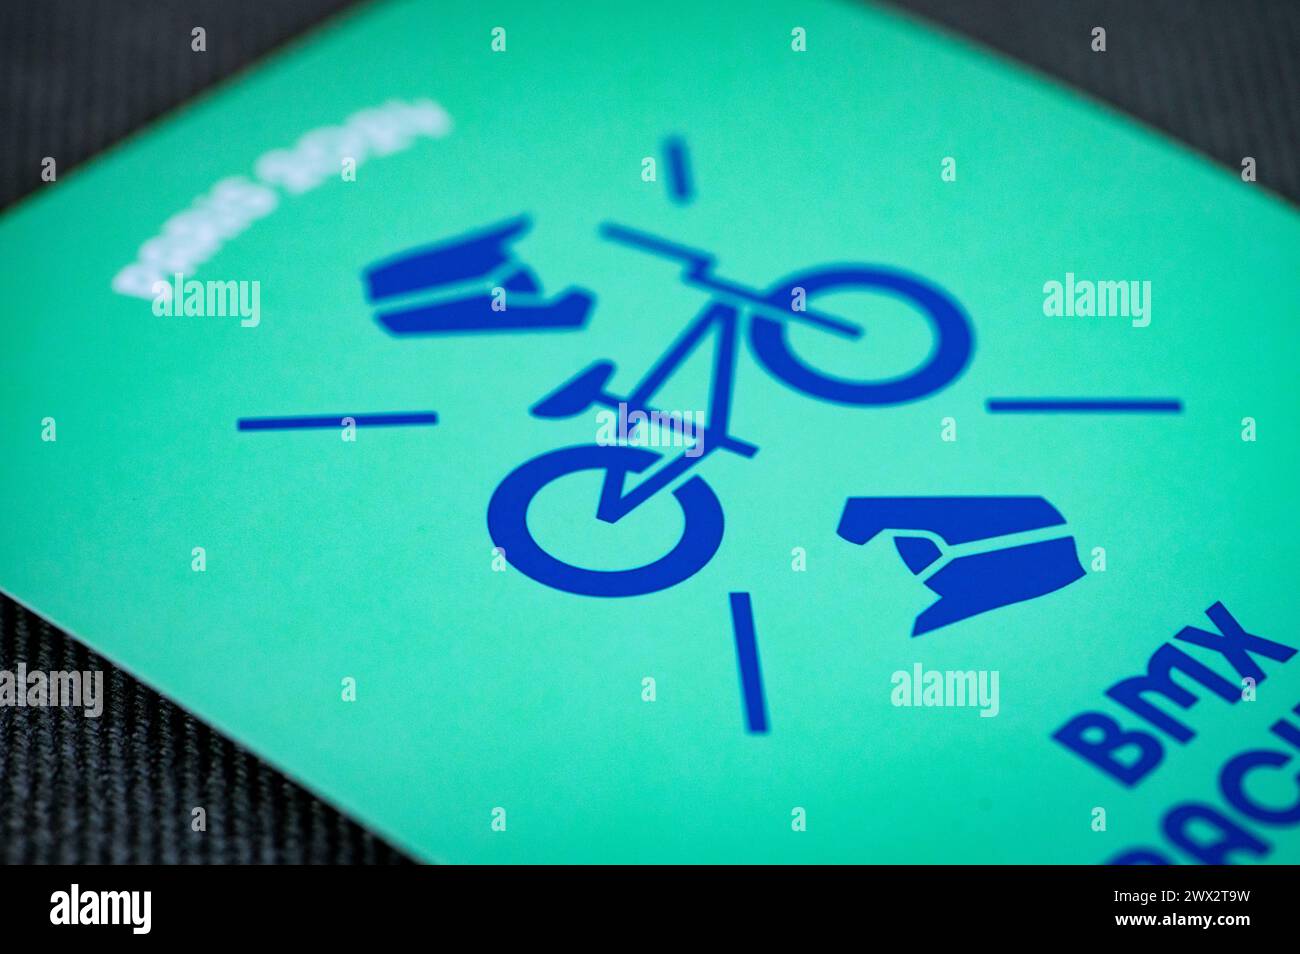 BMX-Rennpiktogramm für die olympischen sommerspiele 2024 in paris. Offizielle Ikone des Sports beim olympischen Spiel in Paris 24 Stockfoto